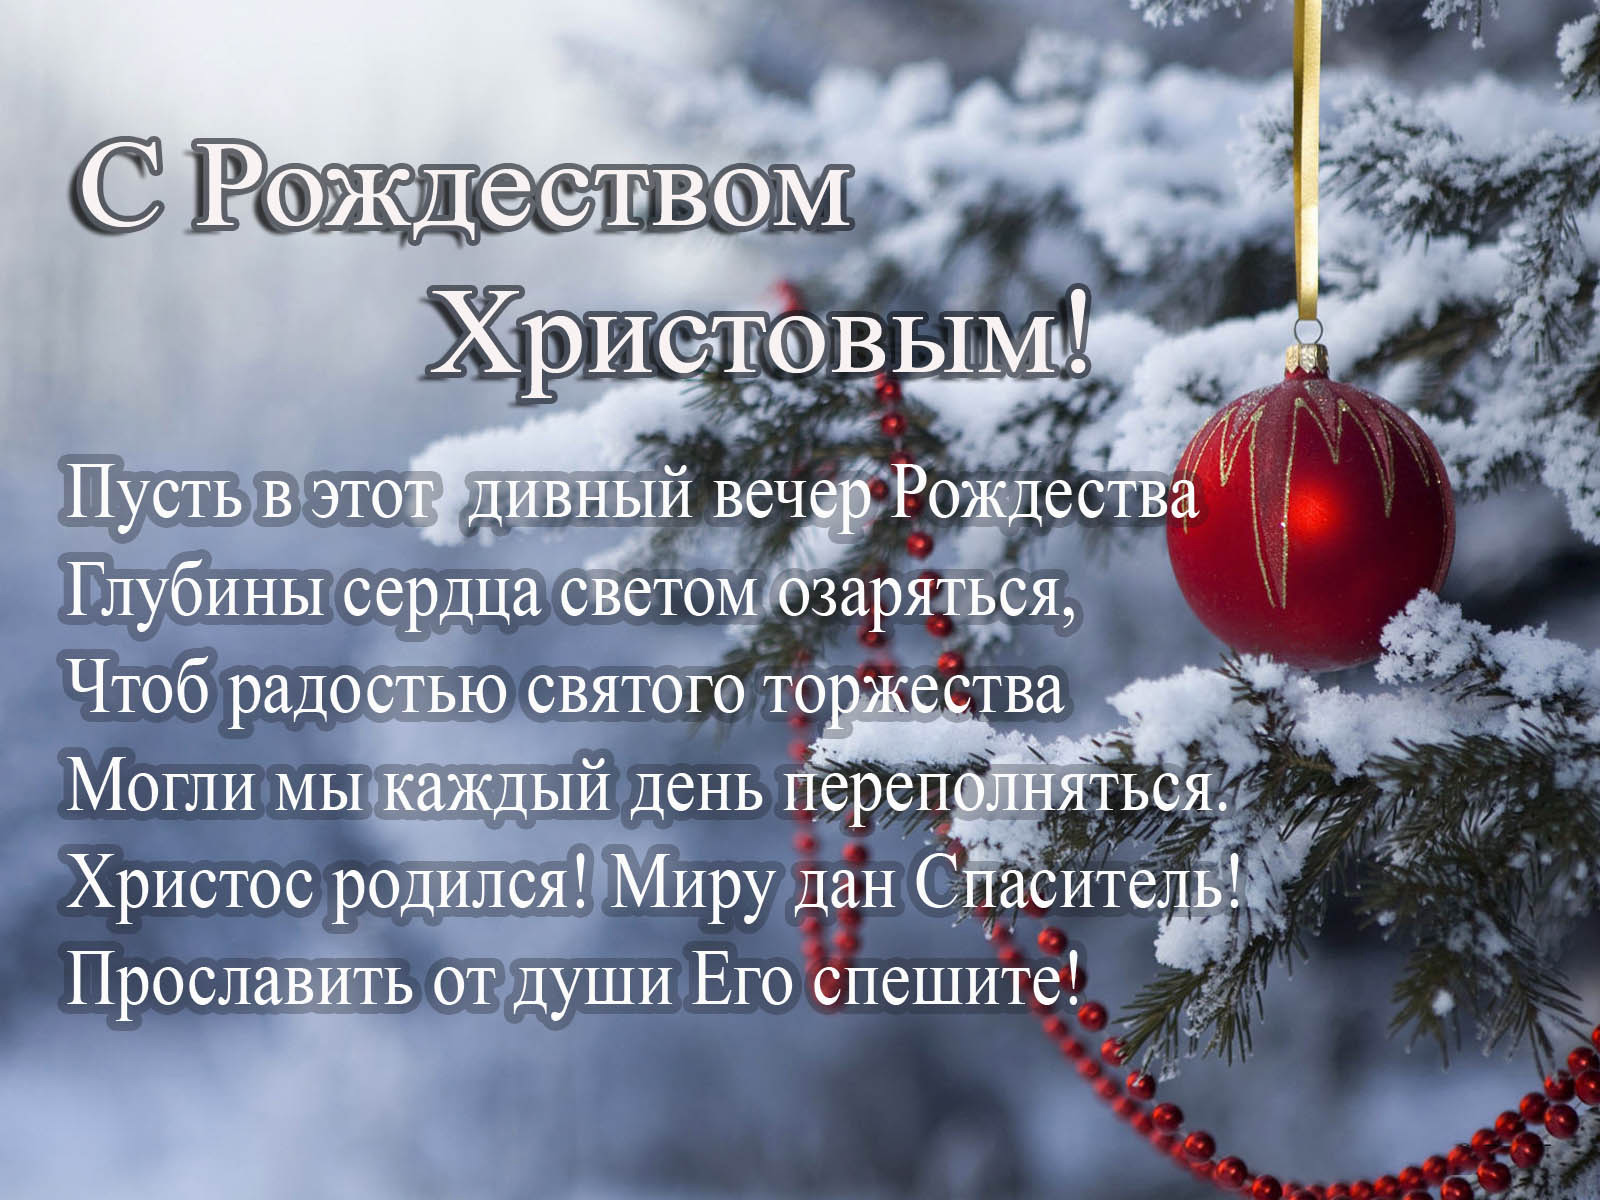 Текст Поздравления С Рождеством Христовым В Прозе